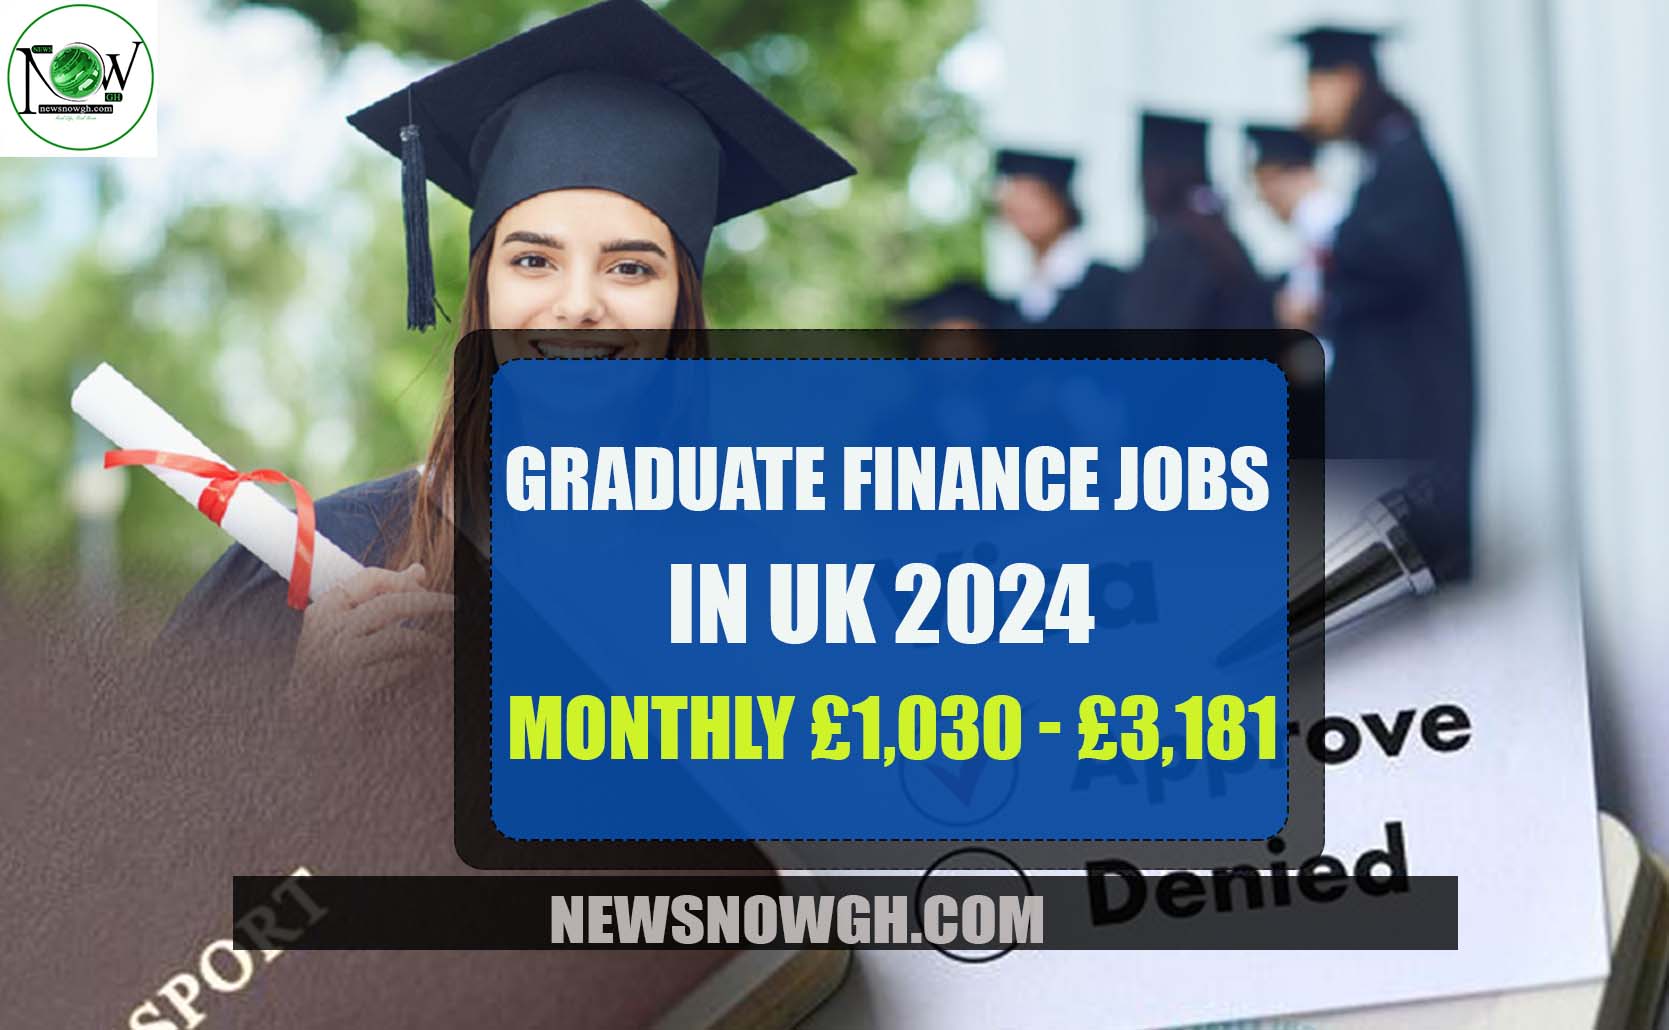 Graduate Finance Jobs in UK 2024 (£1,030 £3,181 Monthly)